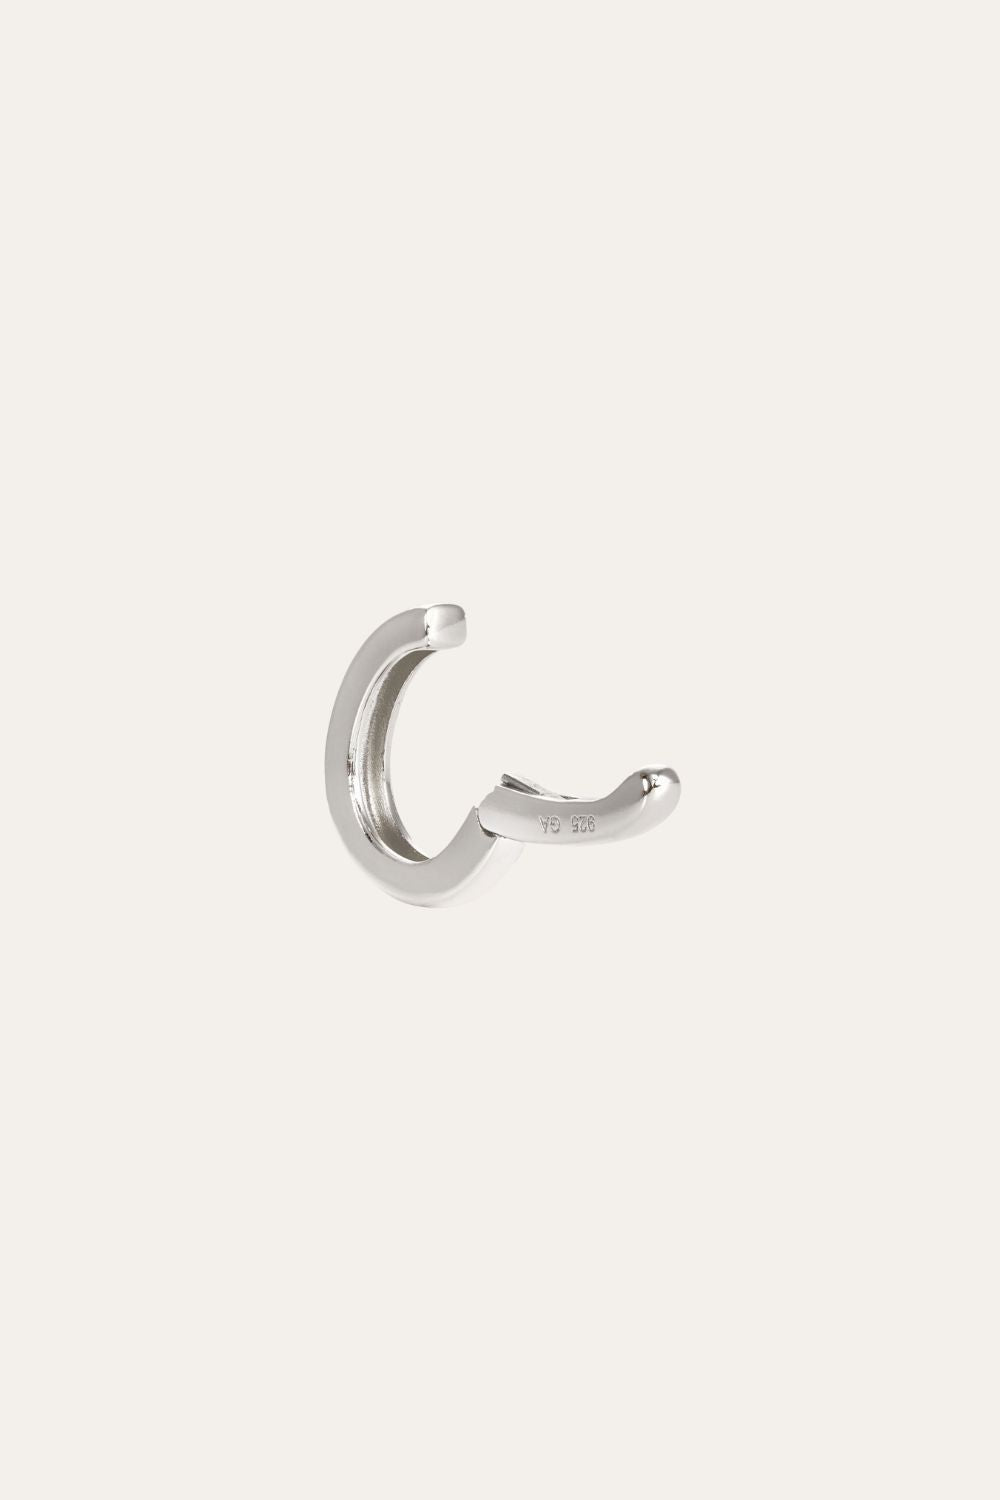 Simple sterling silver medium ear cuff